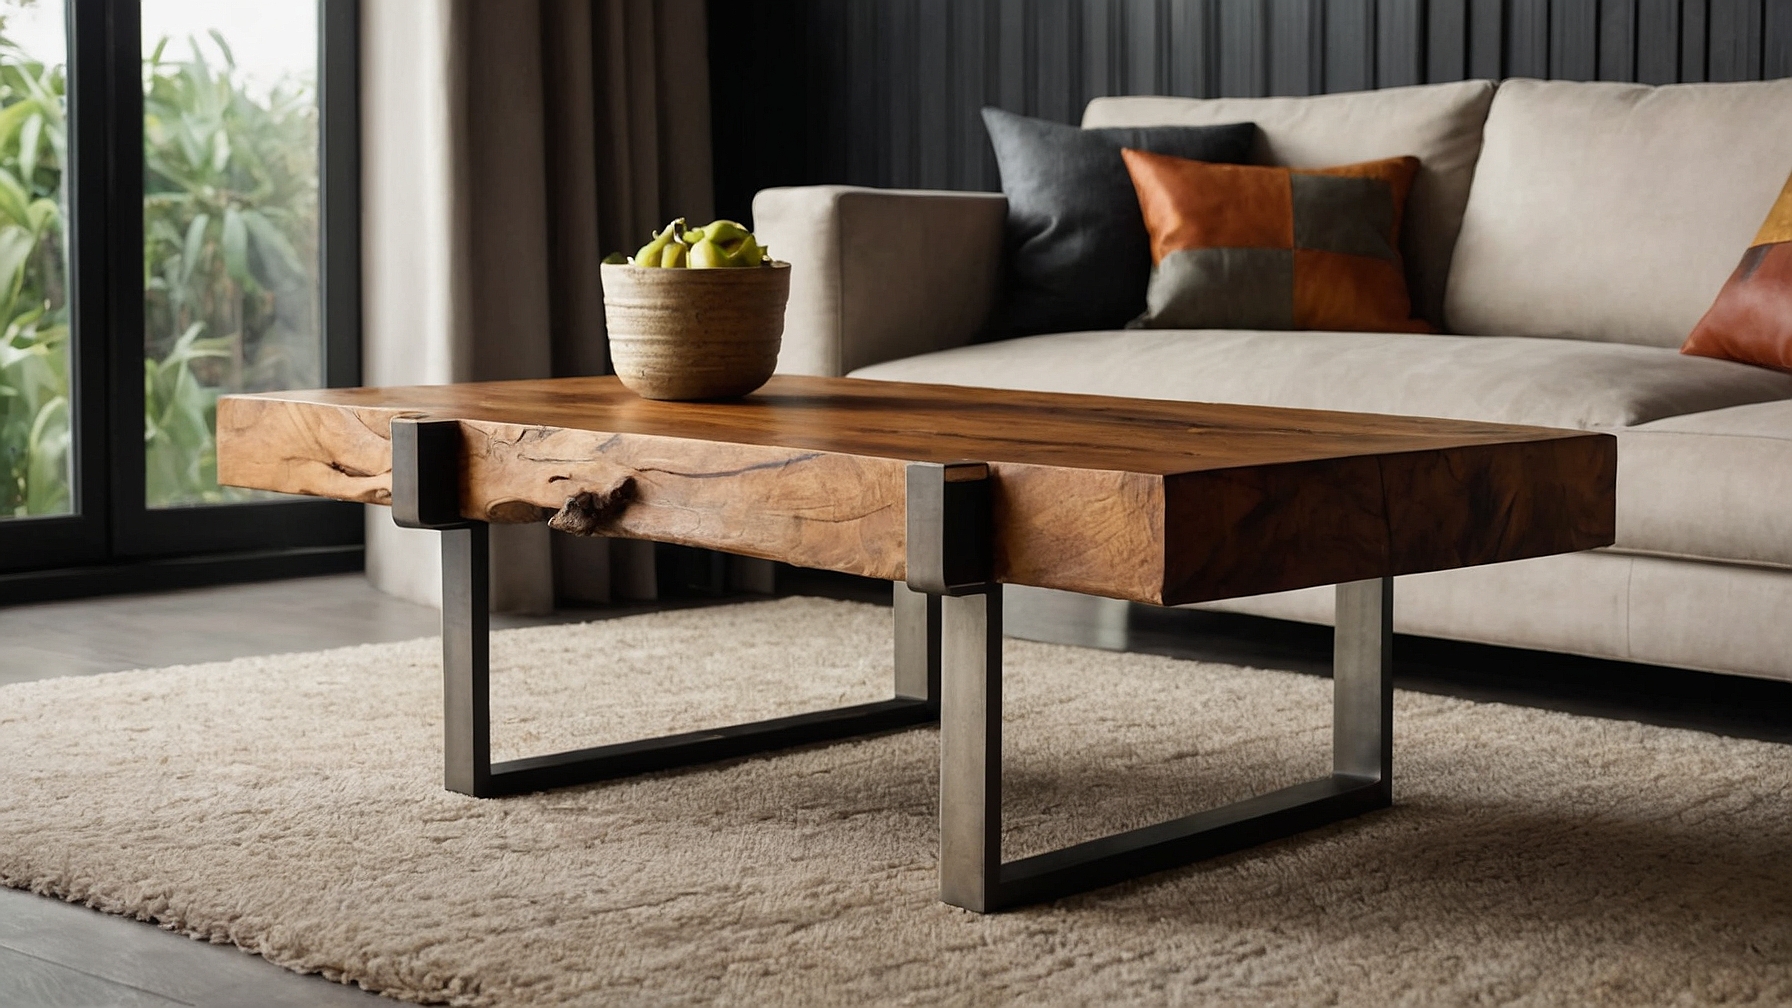 Default Minimalist house Wood Coffee Table Modern Style Timel 2 3